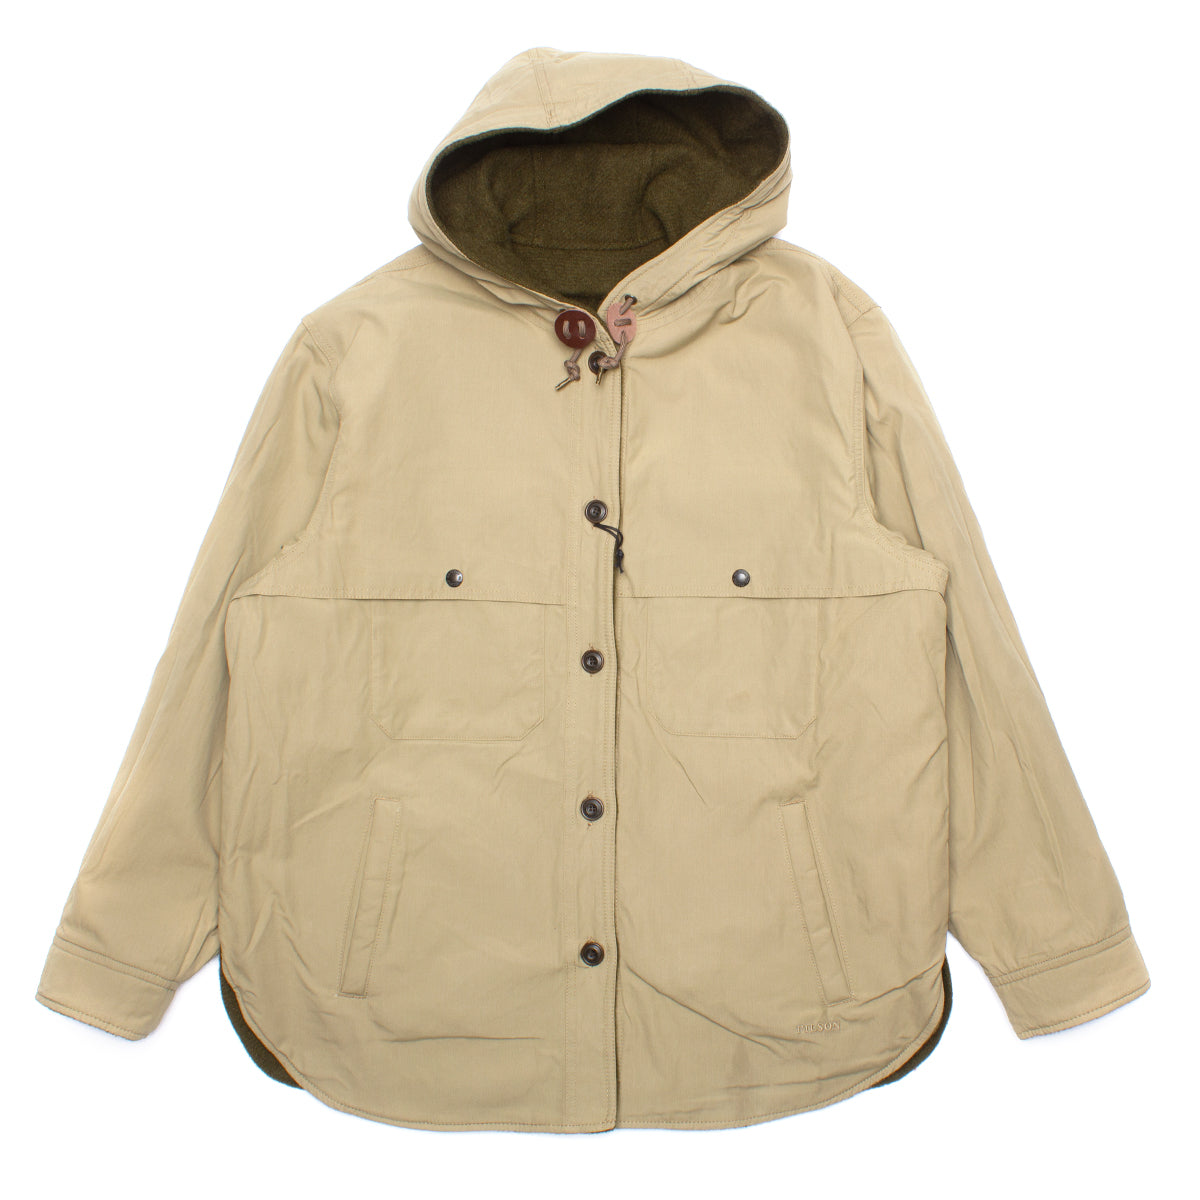 Snohomish Reversible Jacket#N# – Premier